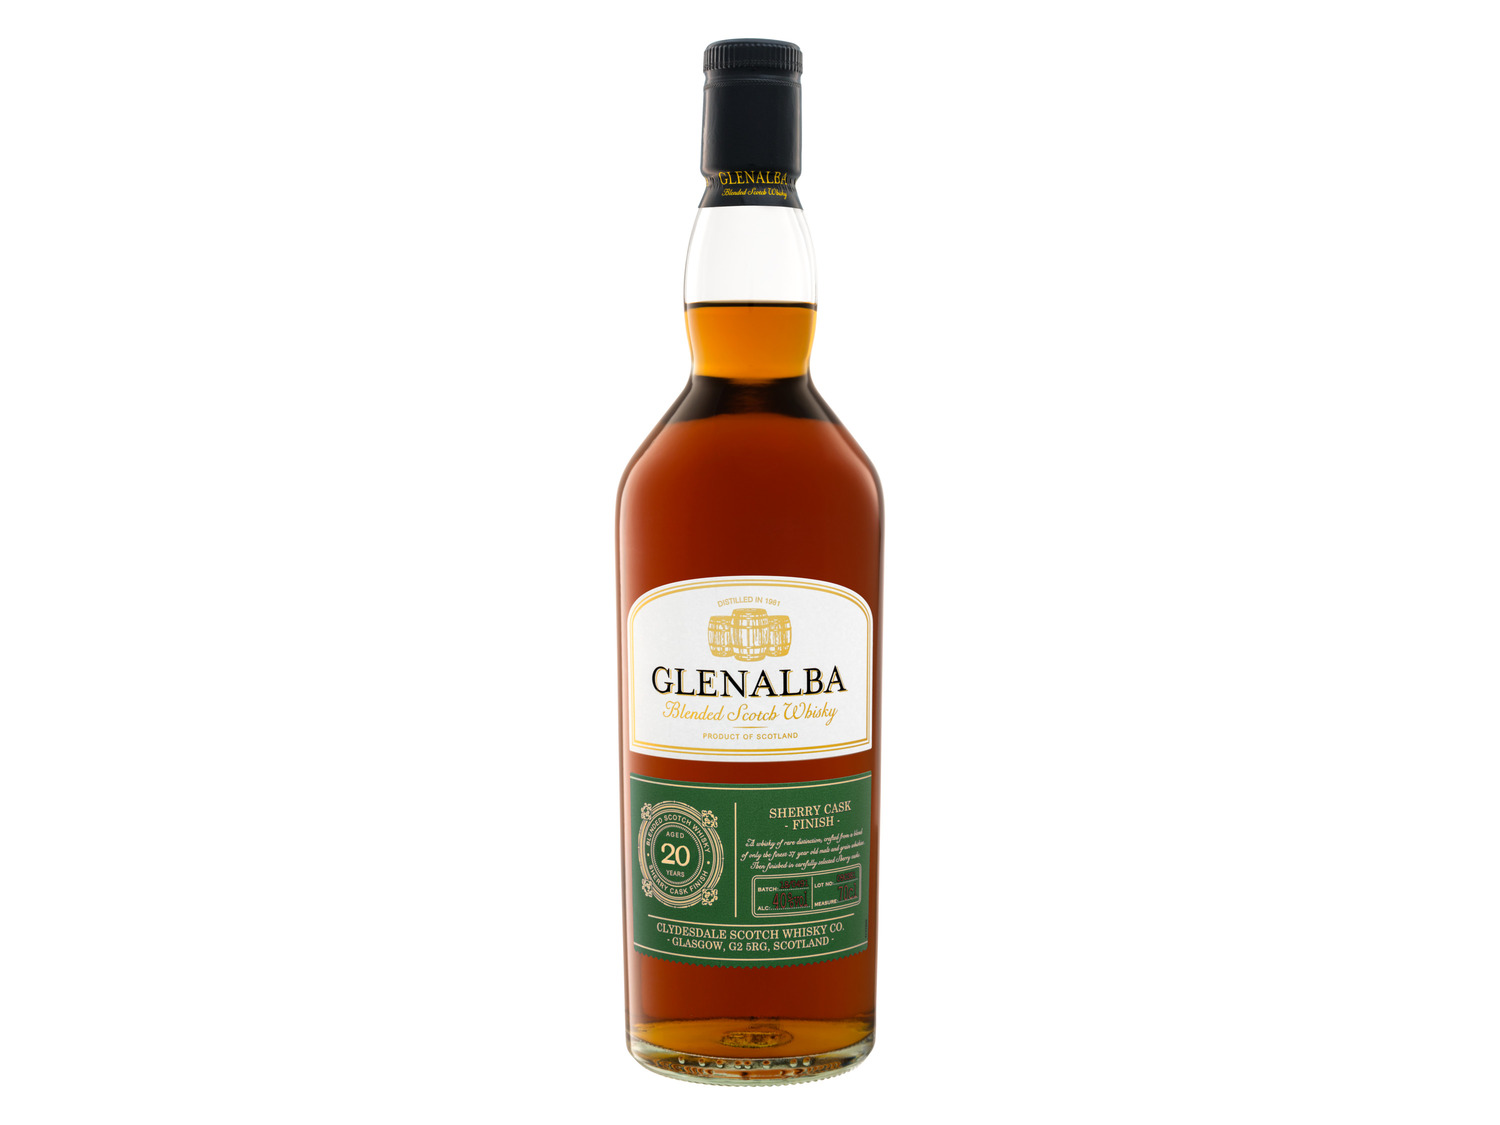 Glenalba Blended Scotch Whisky Sherry Cask Finish 20 J…